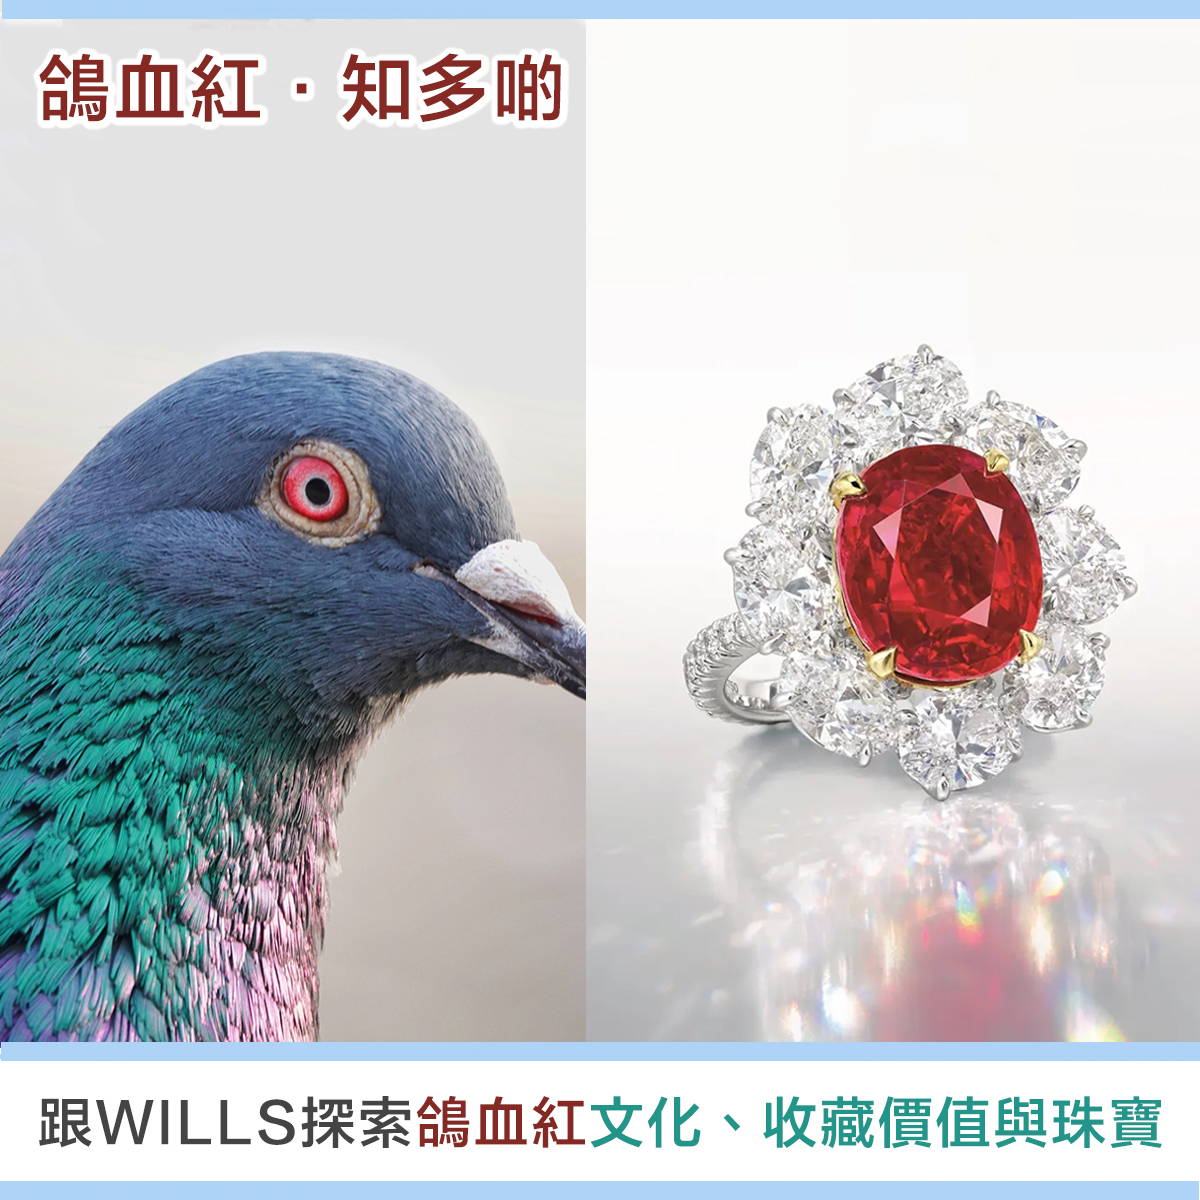 【寶石知識】鴿血紅色寶石 - 歷史文化、收藏價值與珠寶首飾設計